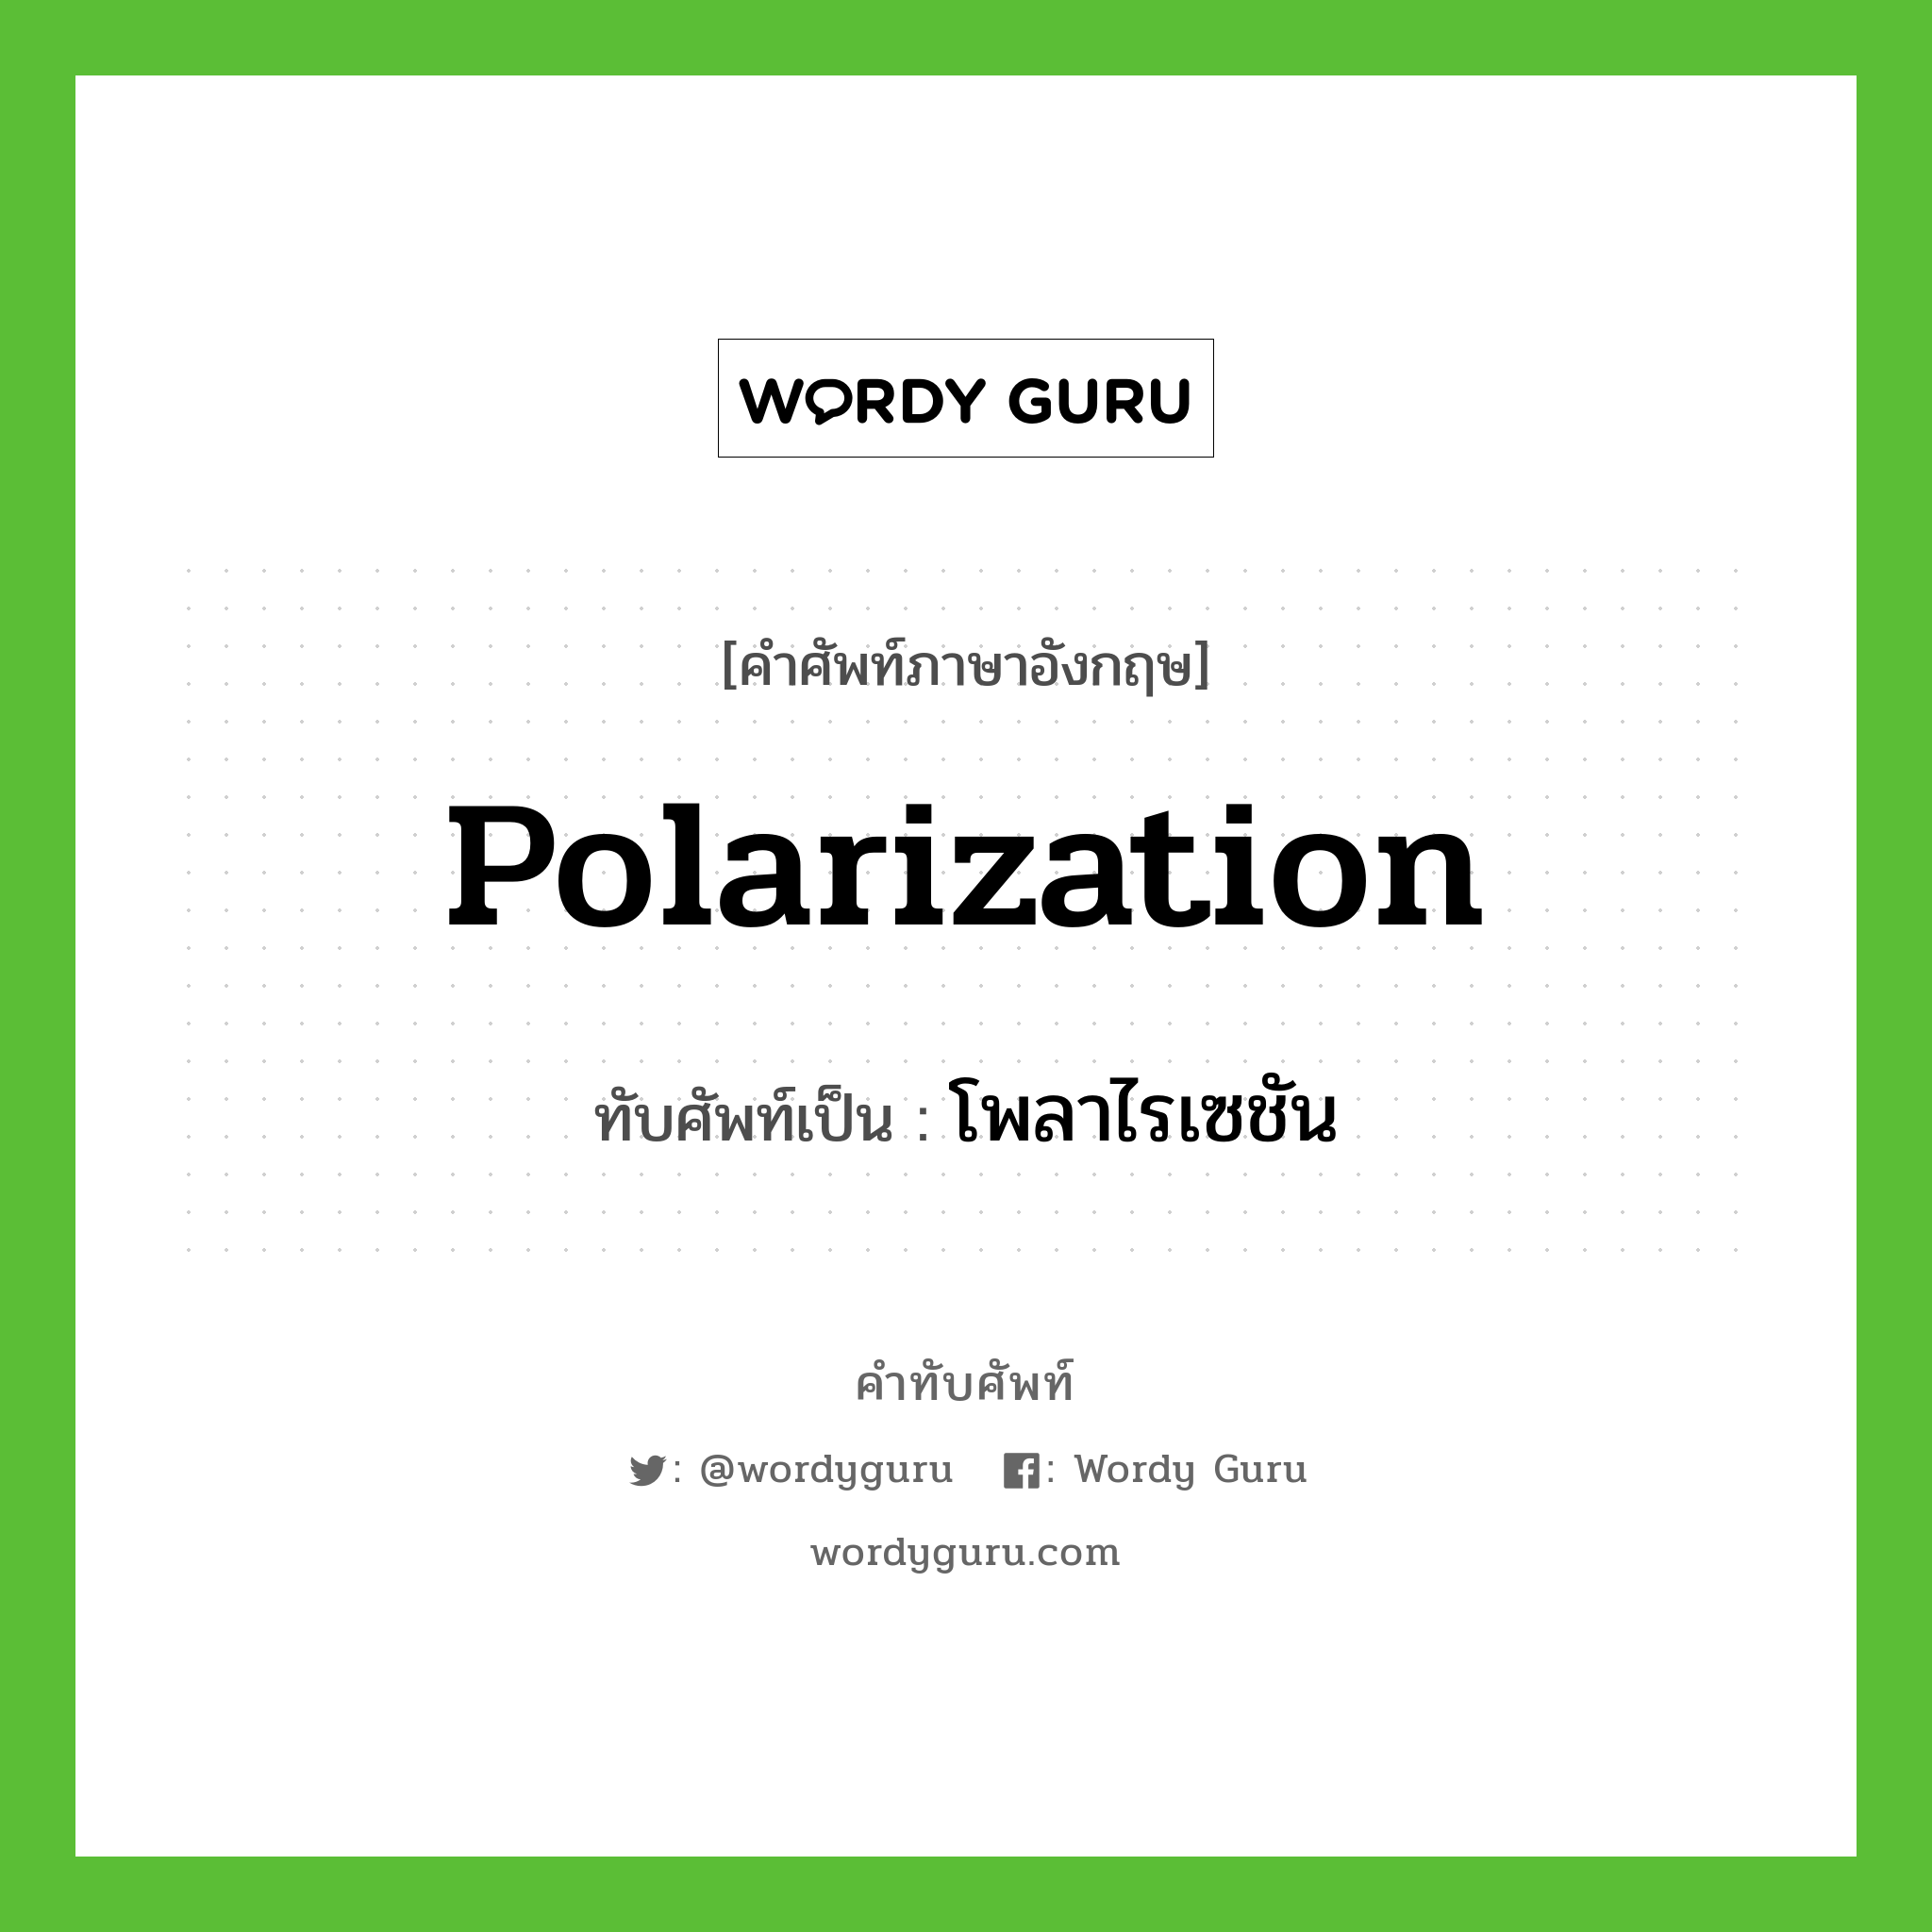 polarization เขียนเป็นคำไทยว่าอะไร?, คำศัพท์ภาษาอังกฤษ polarization ทับศัพท์เป็น โพลาไรเซชัน